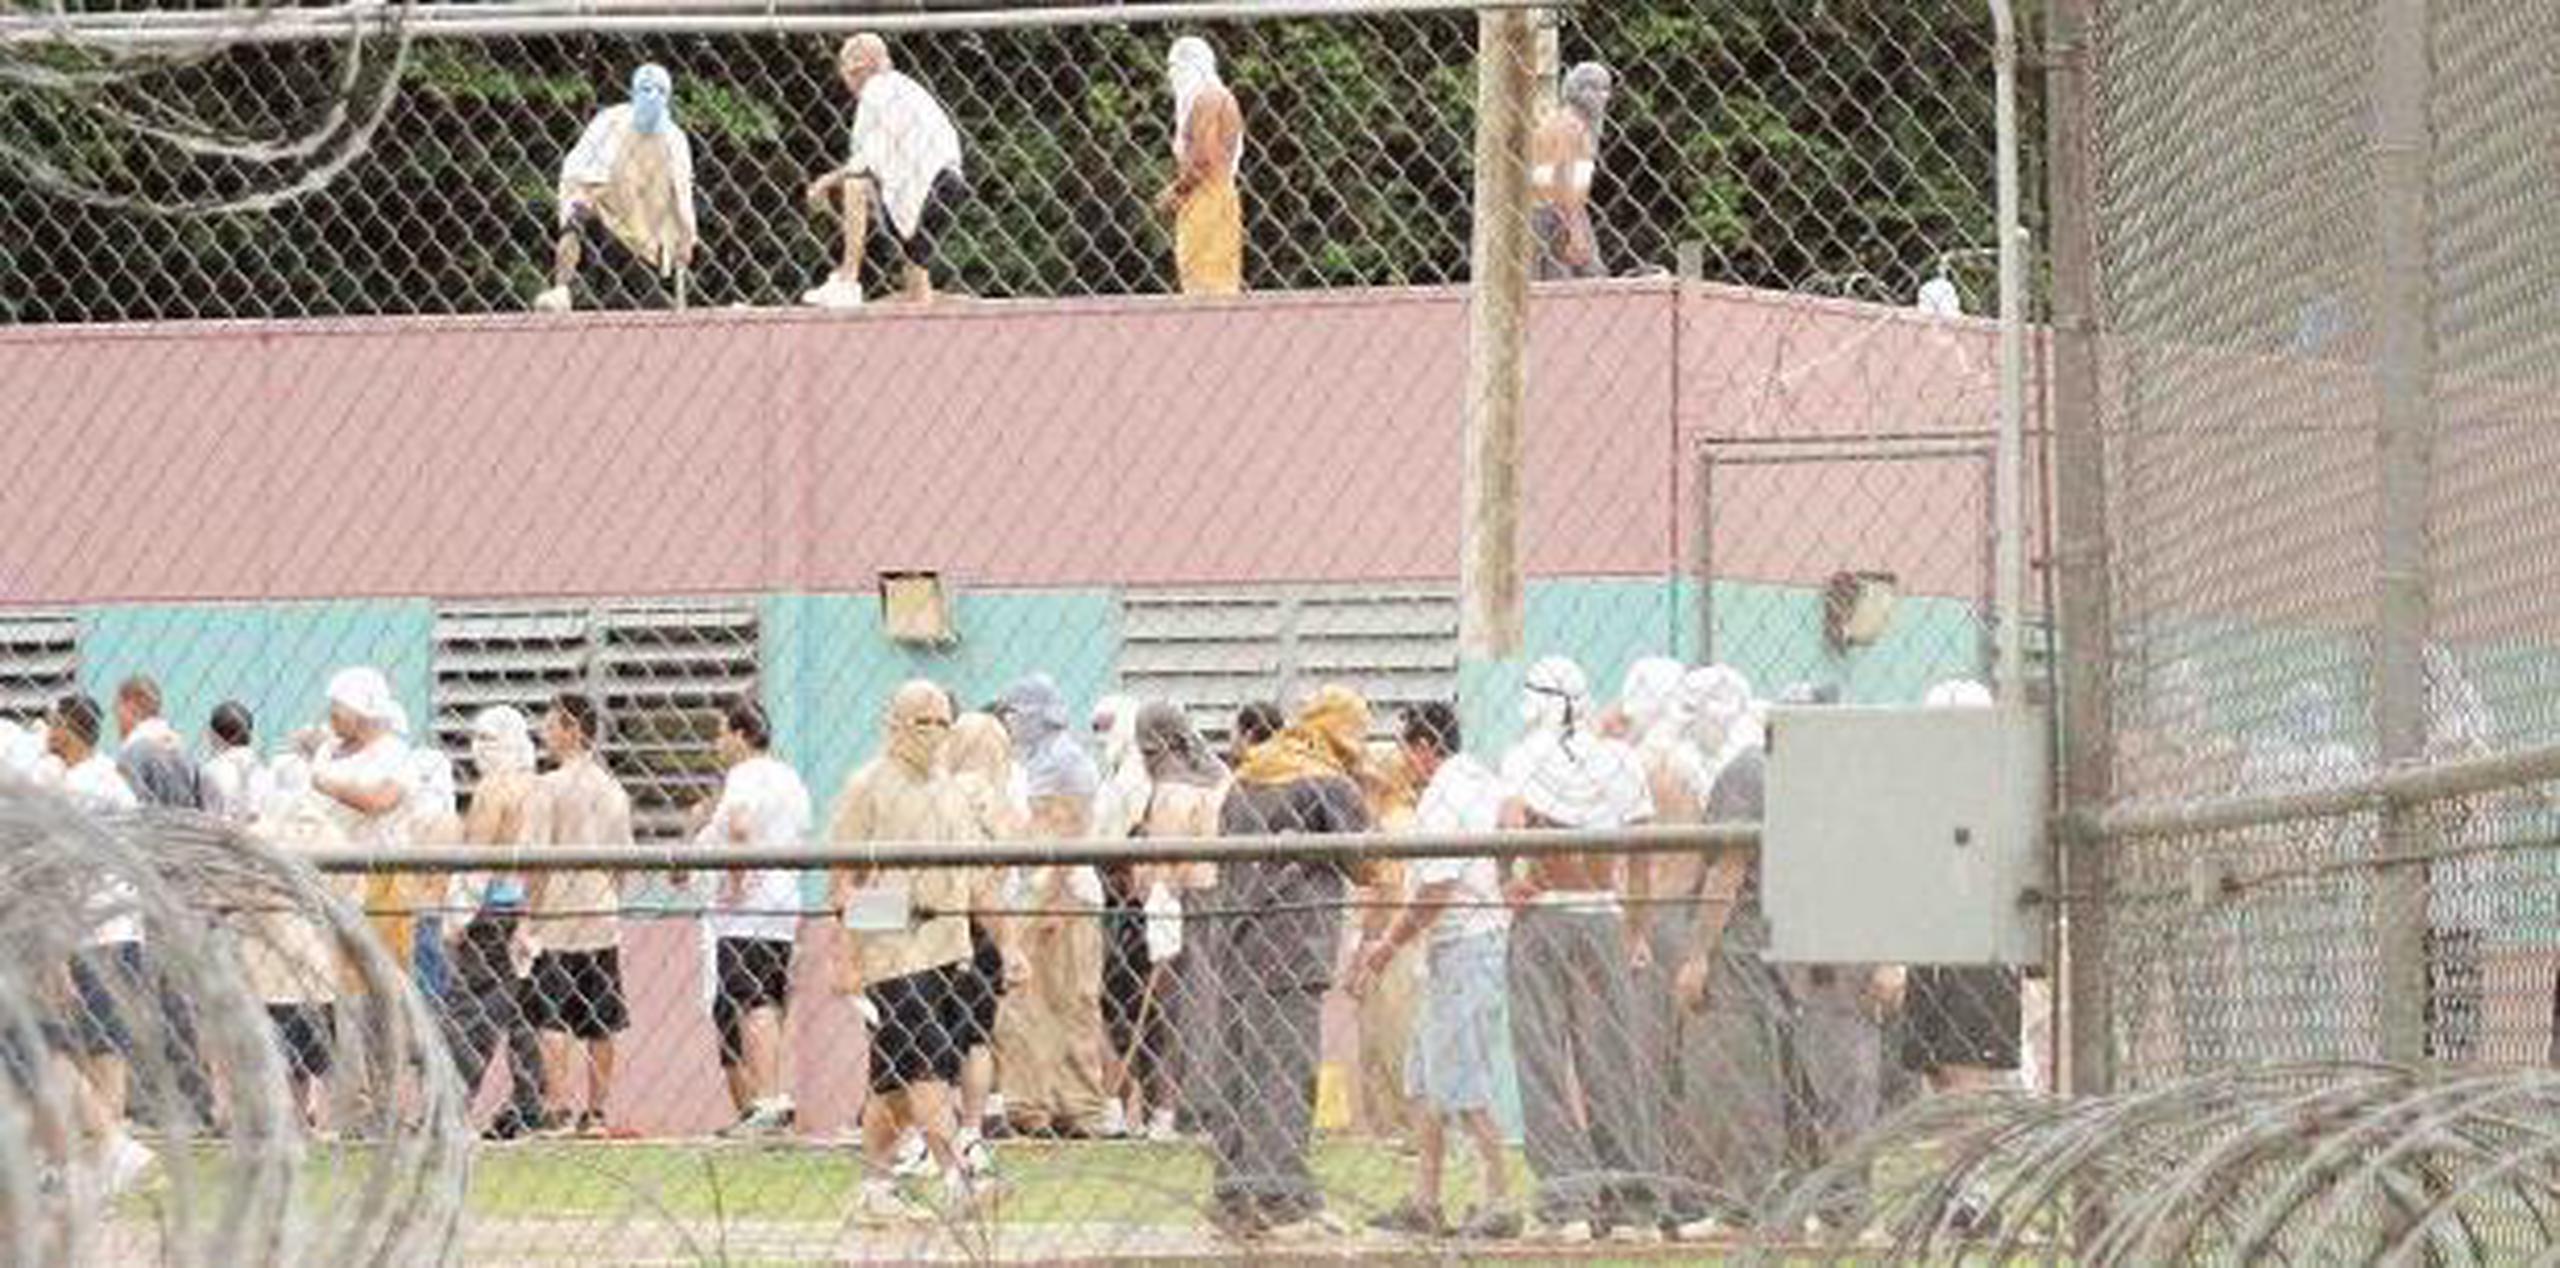 Se han reportado diversos incidentes en los pasados meses en la cárcel de Sabana Hoyos. (archivo)